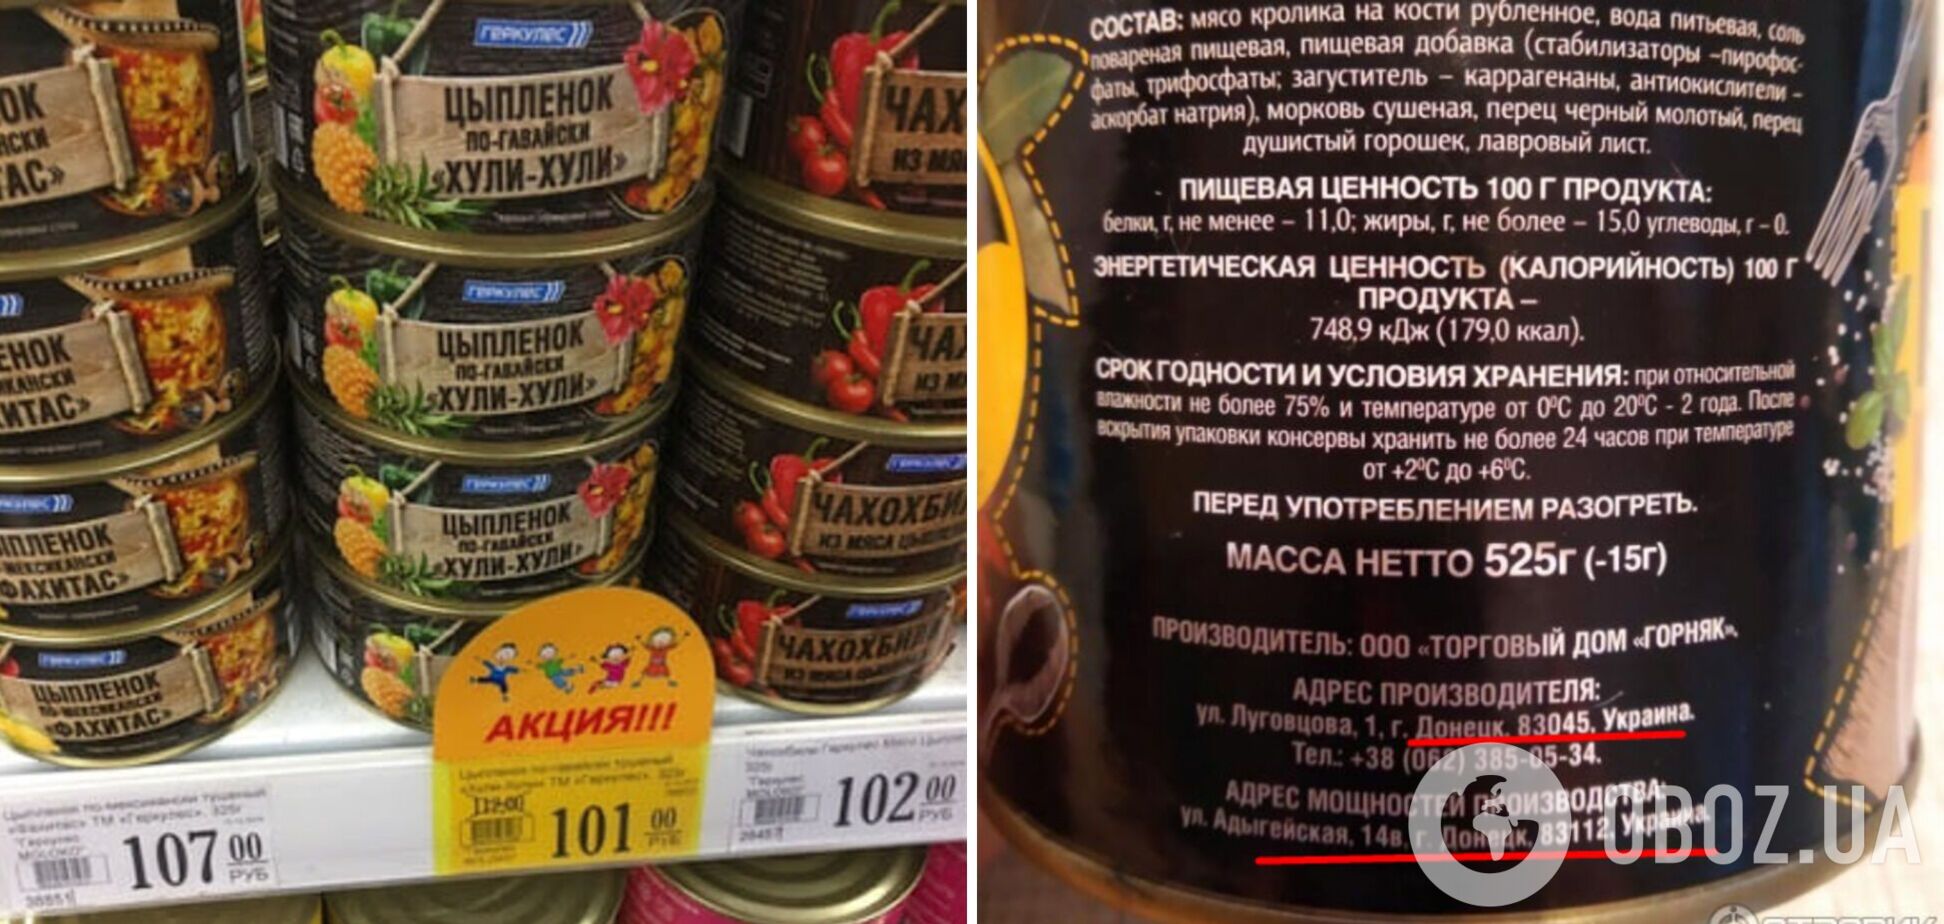 У Донецьку в продажу з'явилися 'українські консерви': мережу розсмішила назва 'Хулі-Хулі'. Фото